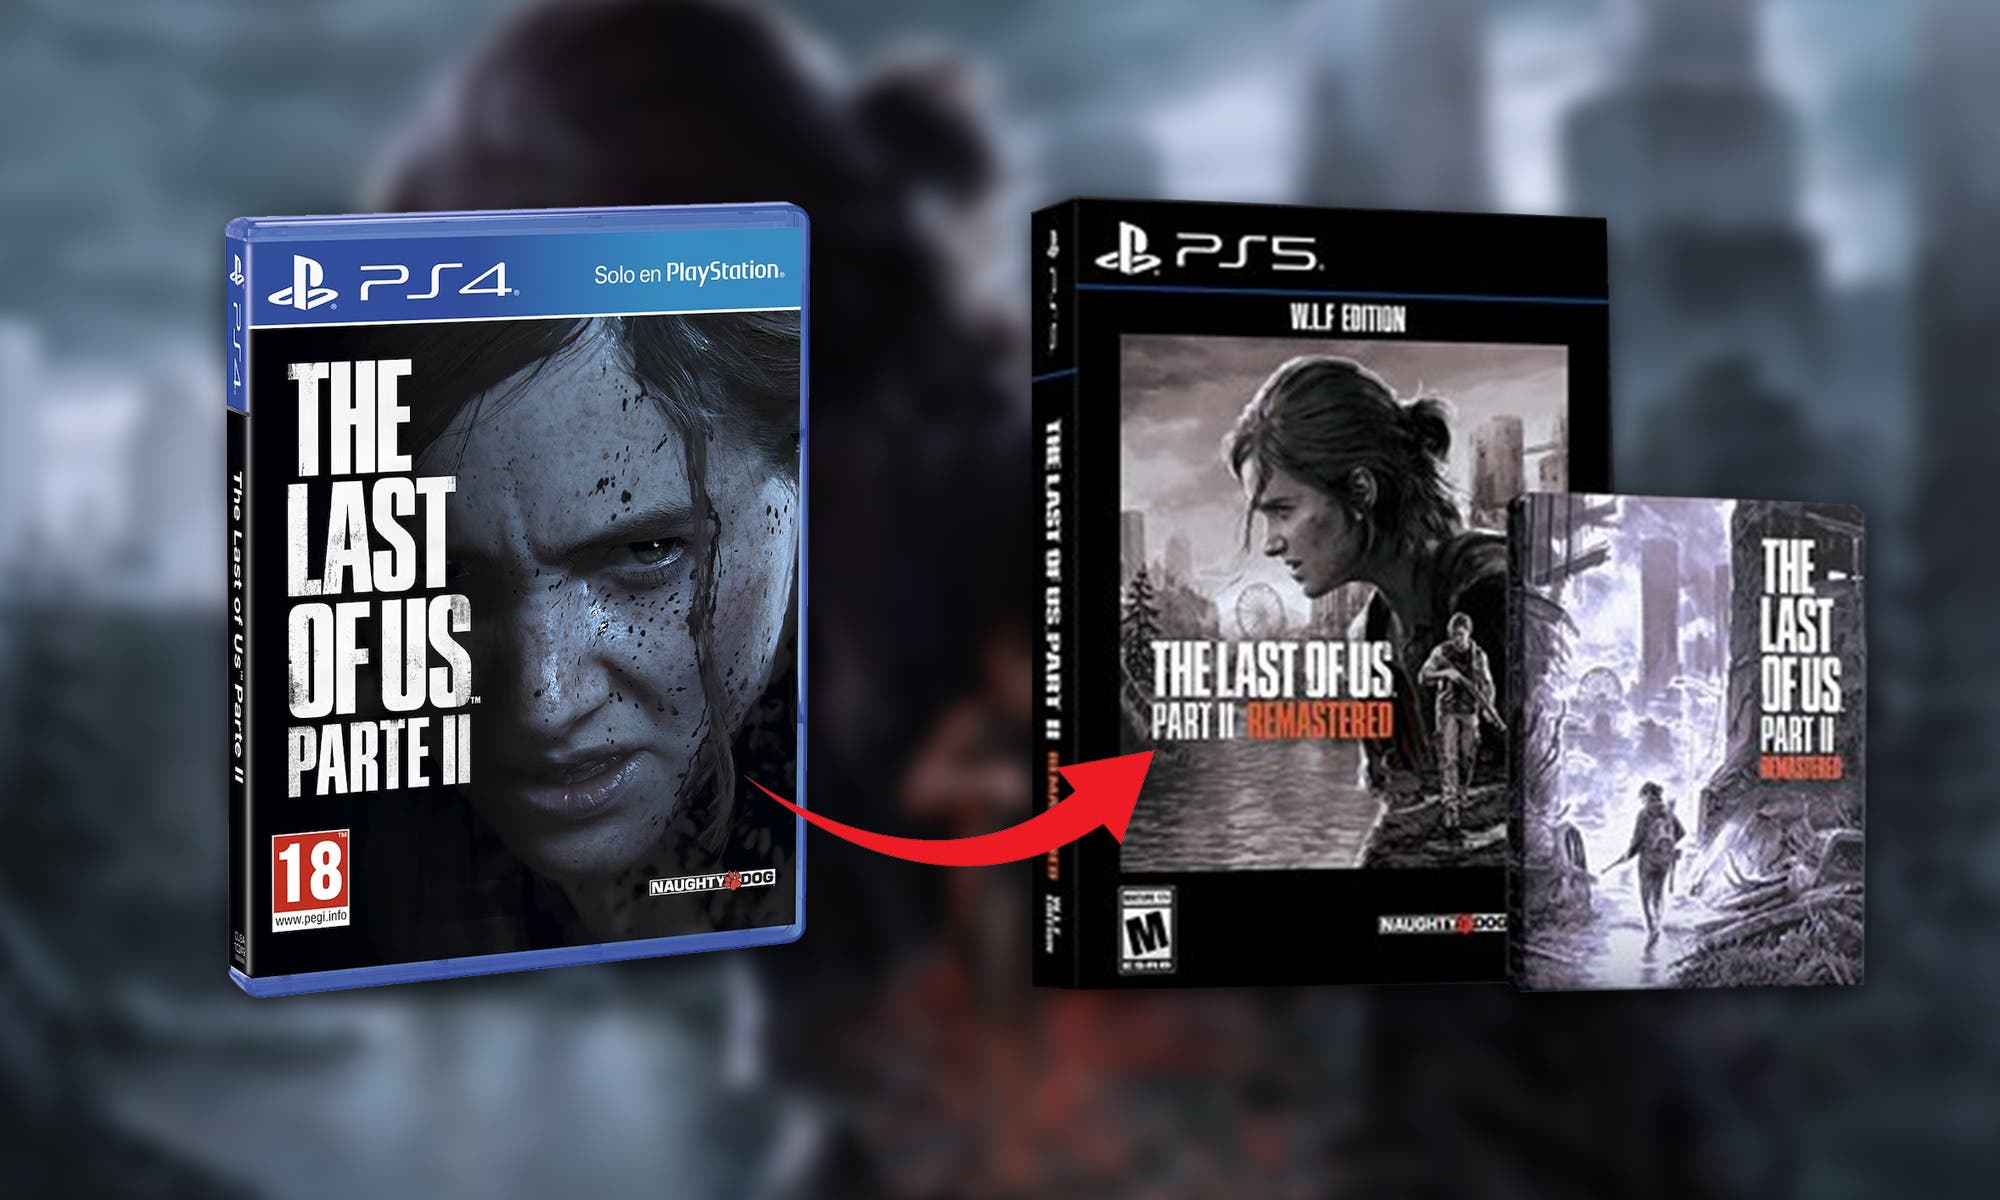 The Last of Us Part 1 para PS5: fecha, ediciones, mejoras y todo